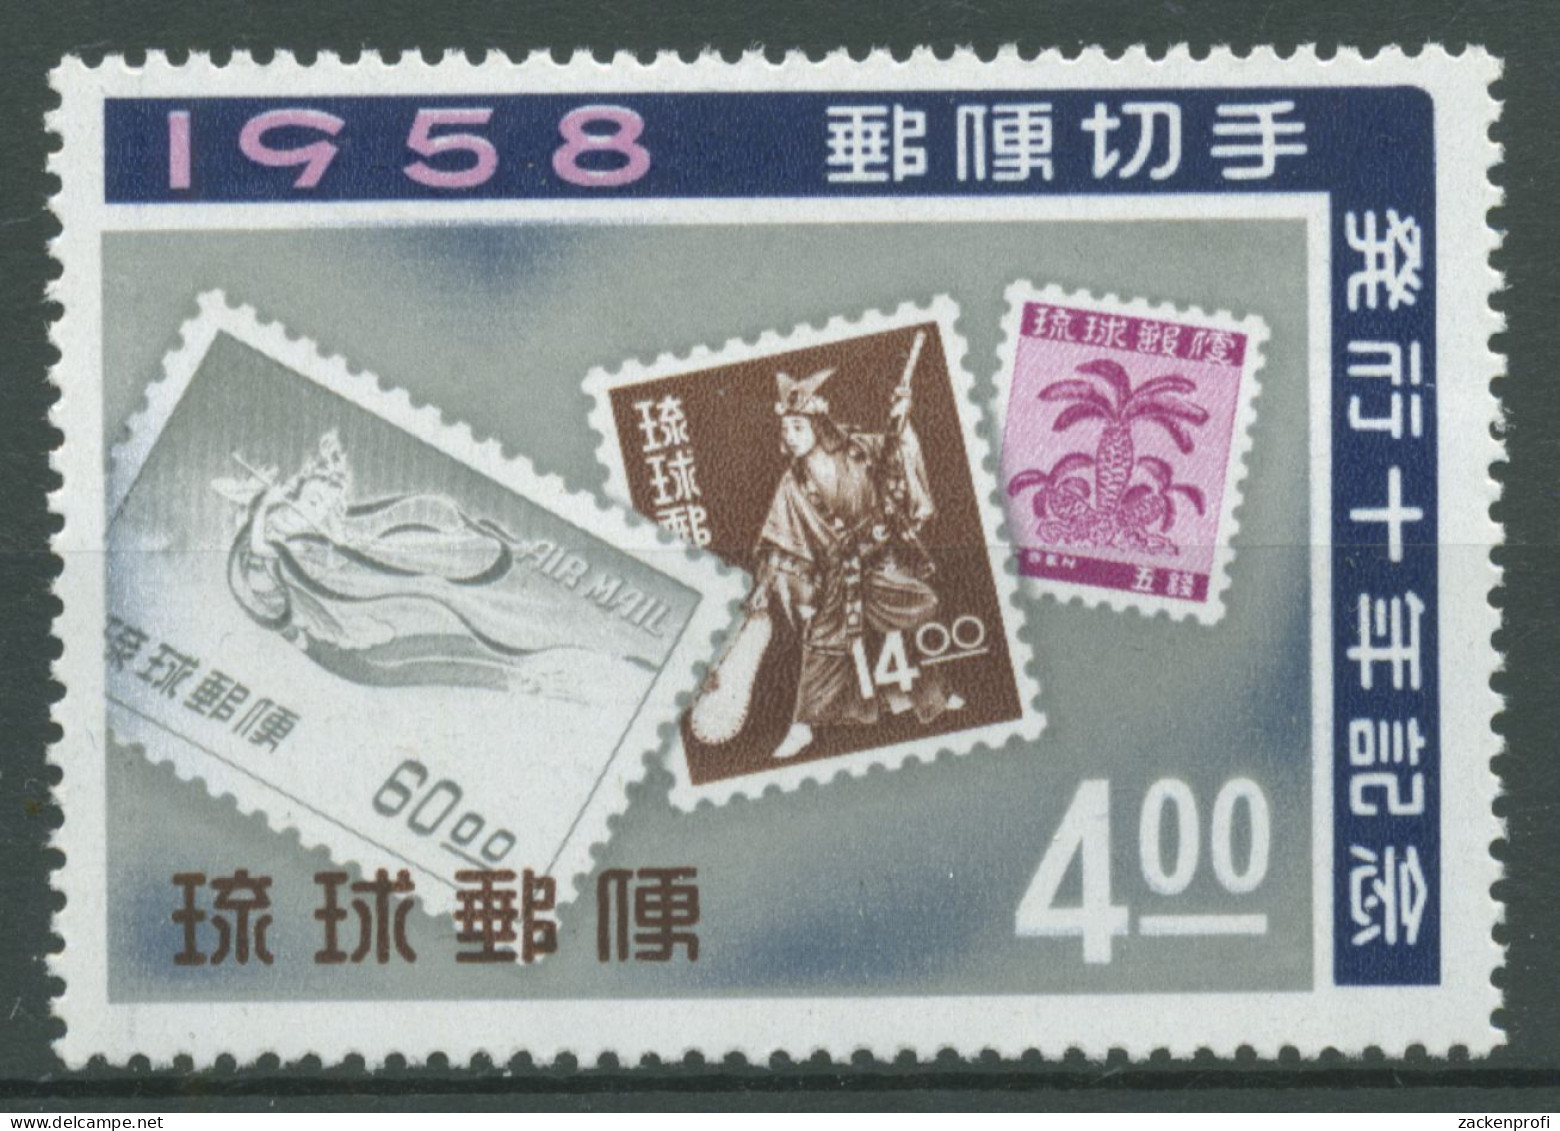 Ryukyu-Inseln 1958 10 Jahre Insel-Briefmarken 57 Postfrisch - Ryukyu Islands